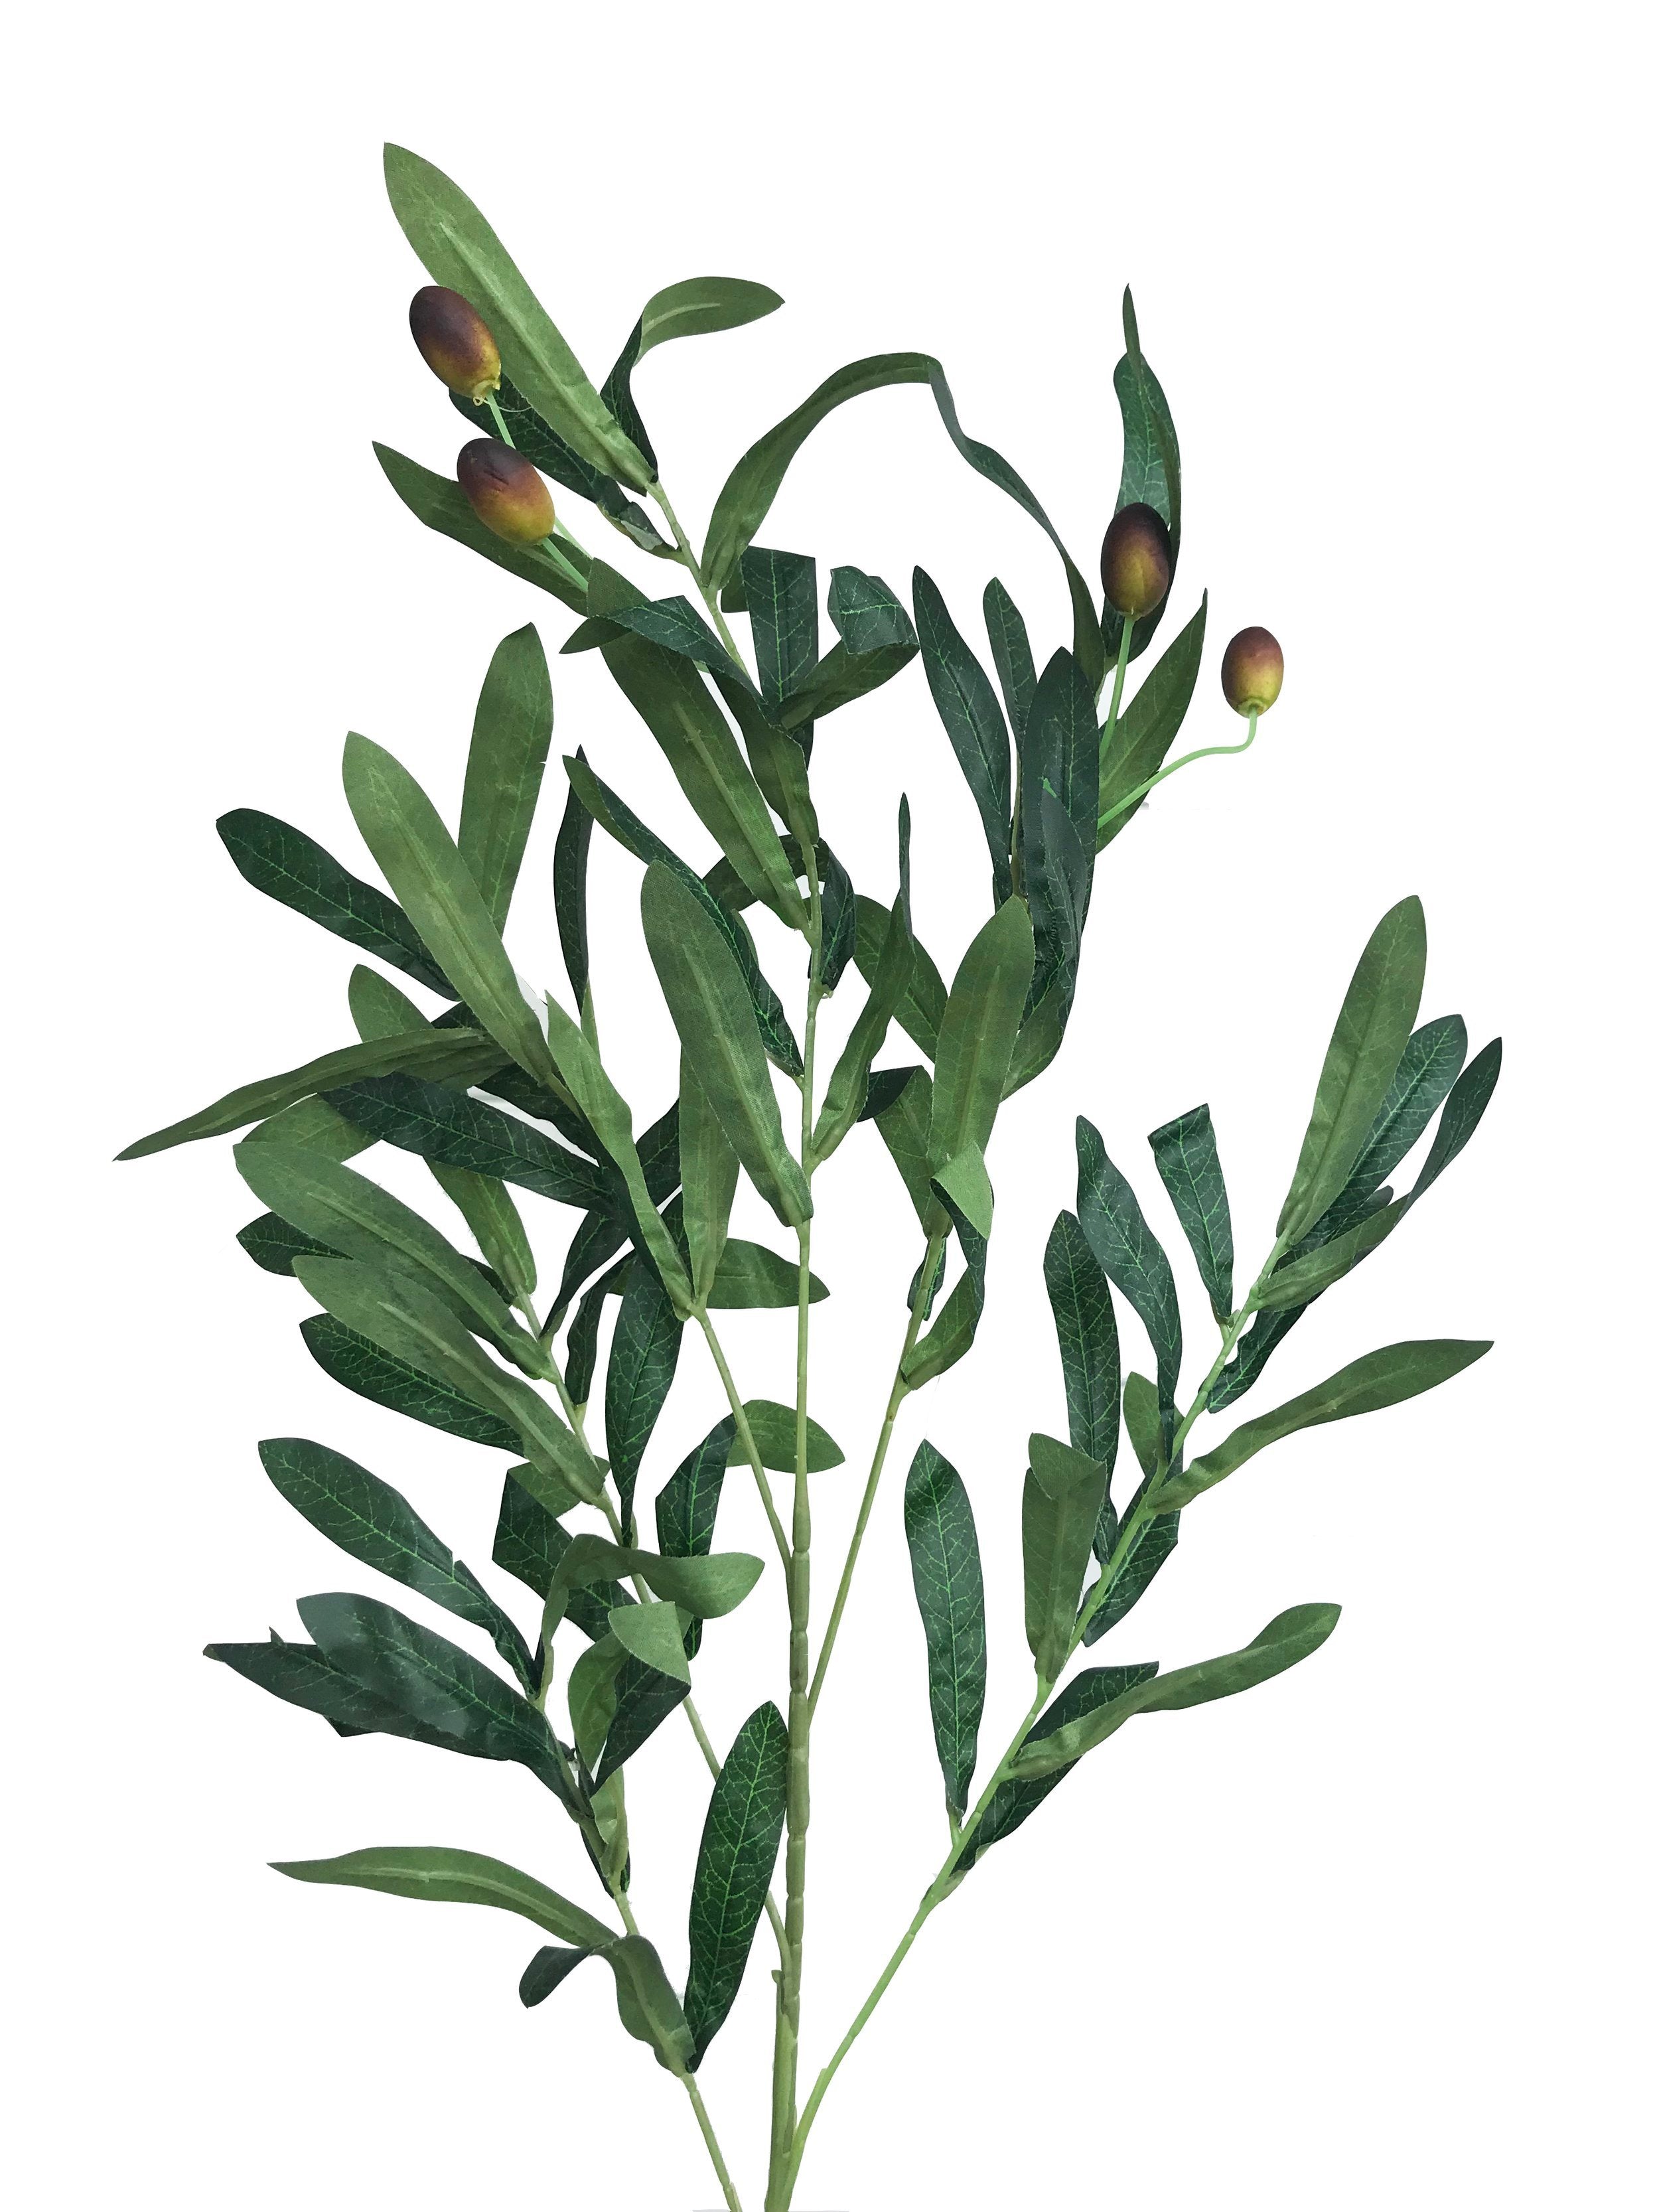 Rama olivo artificial con aceitunas